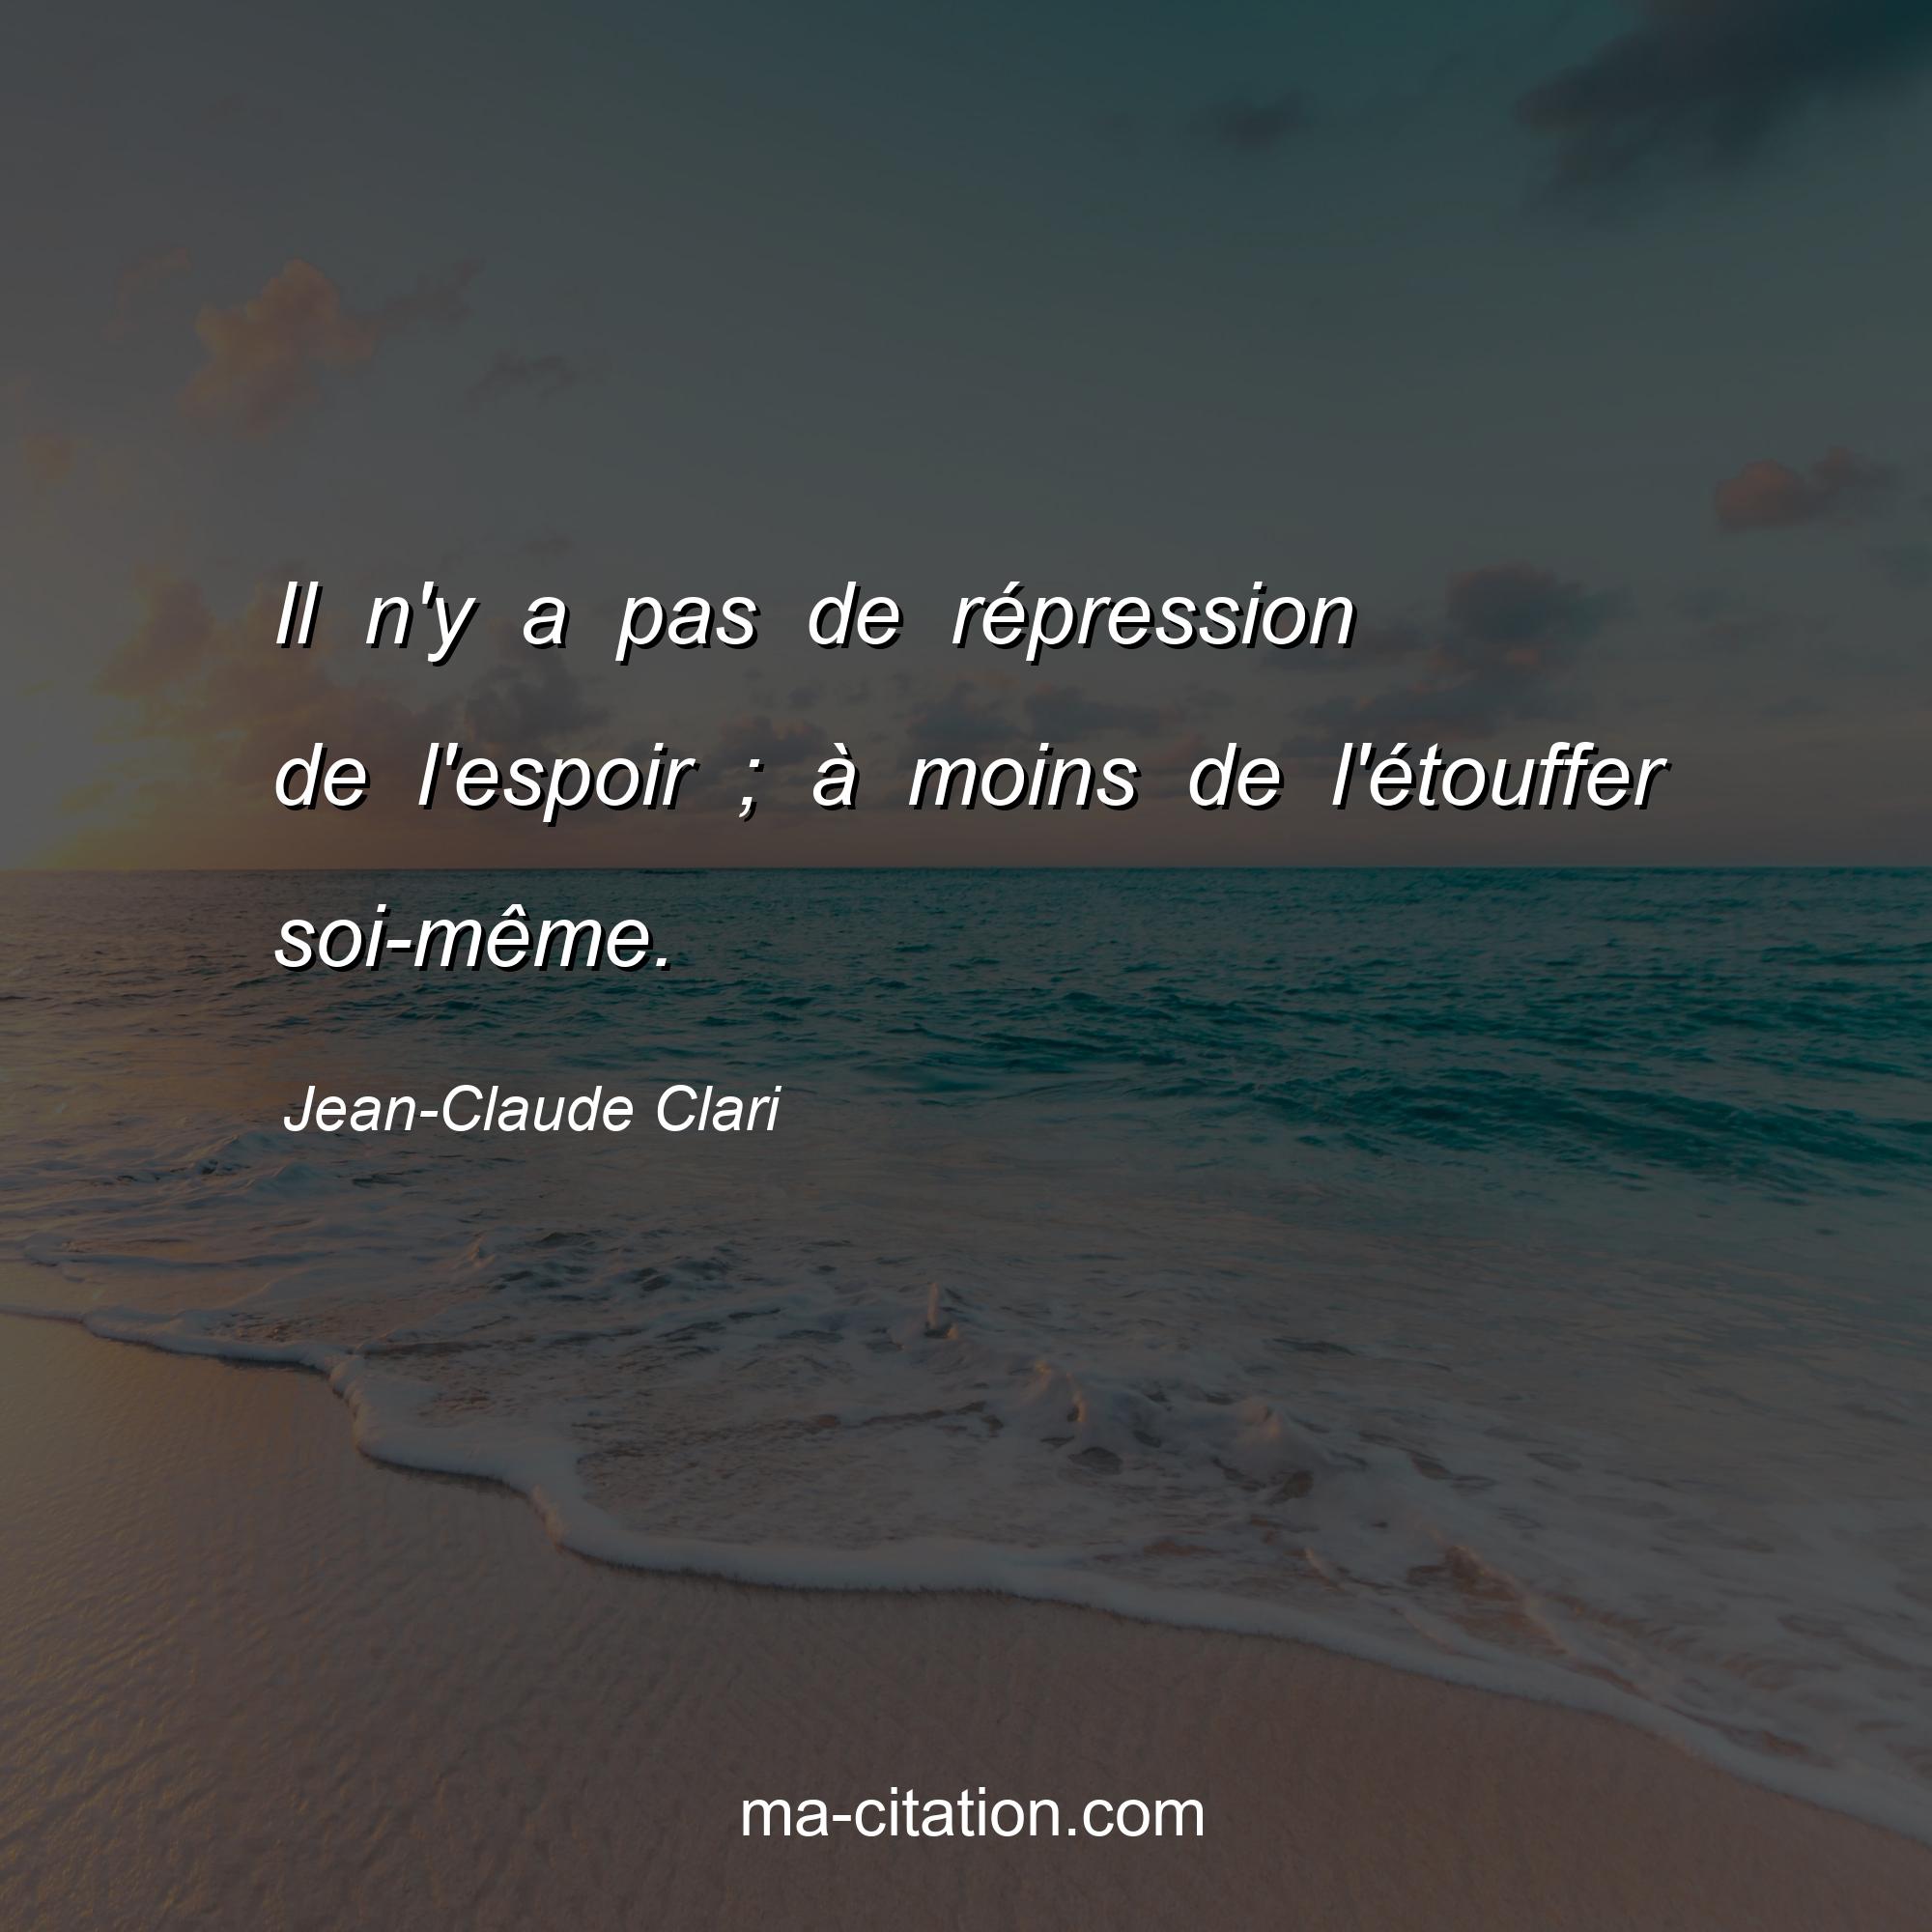 Jean-Claude Clari : Il n'y a pas de répression de l'espoir ; à moins de l'étouffer soi-même.